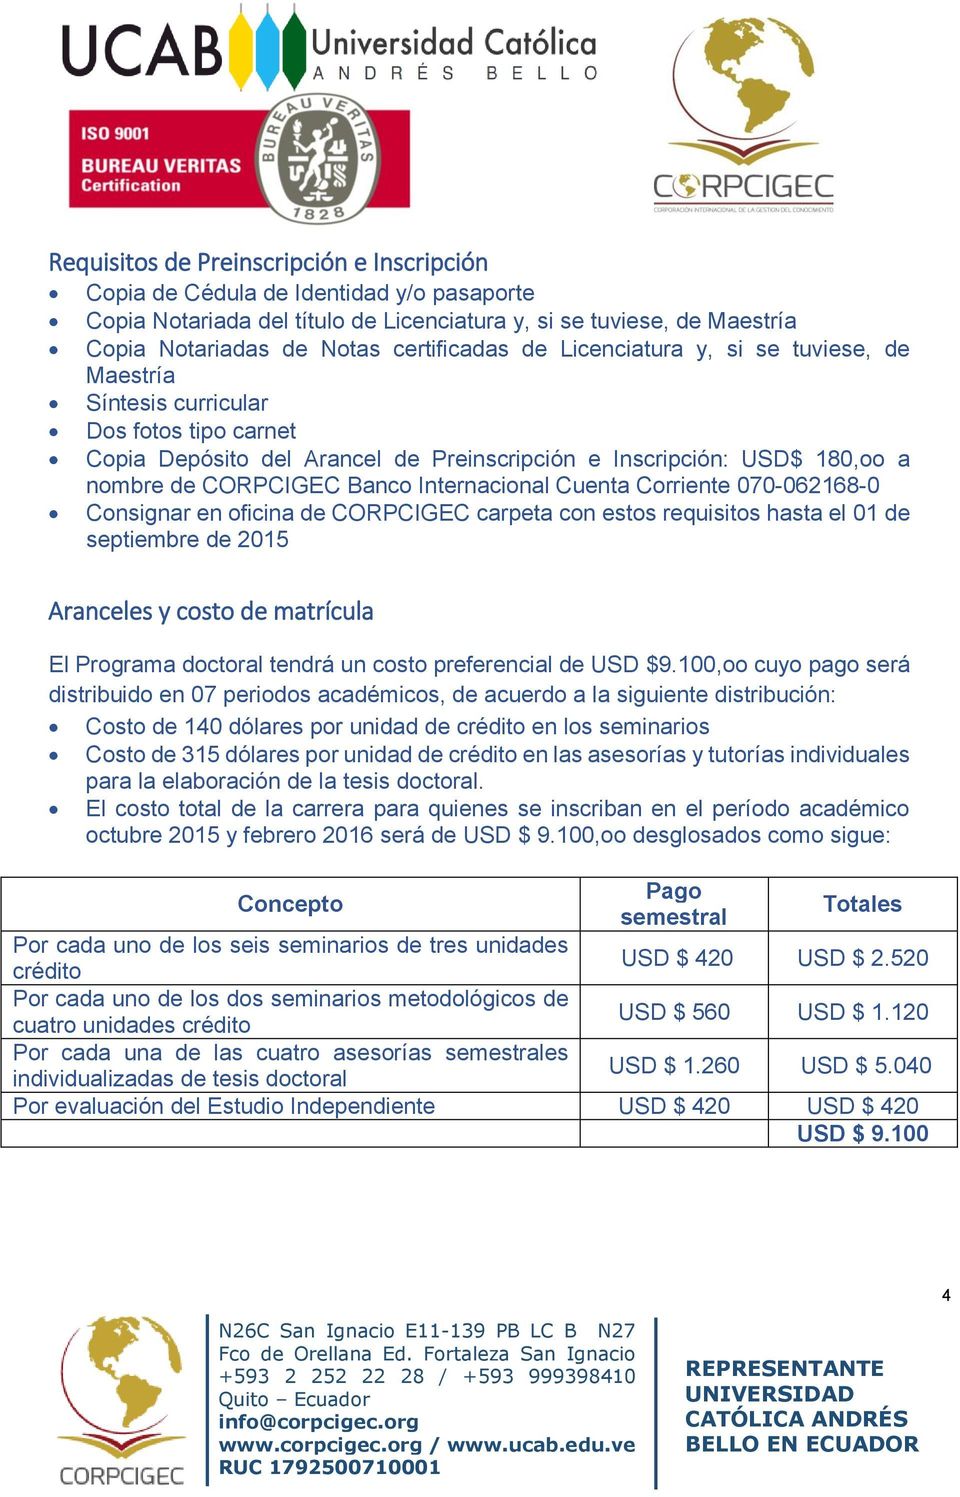 Internacional Cuenta Corriente 070-062168-0 Consignar en oficina de CORPCIGEC carpeta con estos requisitos hasta el 01 de septiembre de 2015 Aranceles y costo de matrícula El Programa doctoral tendrá